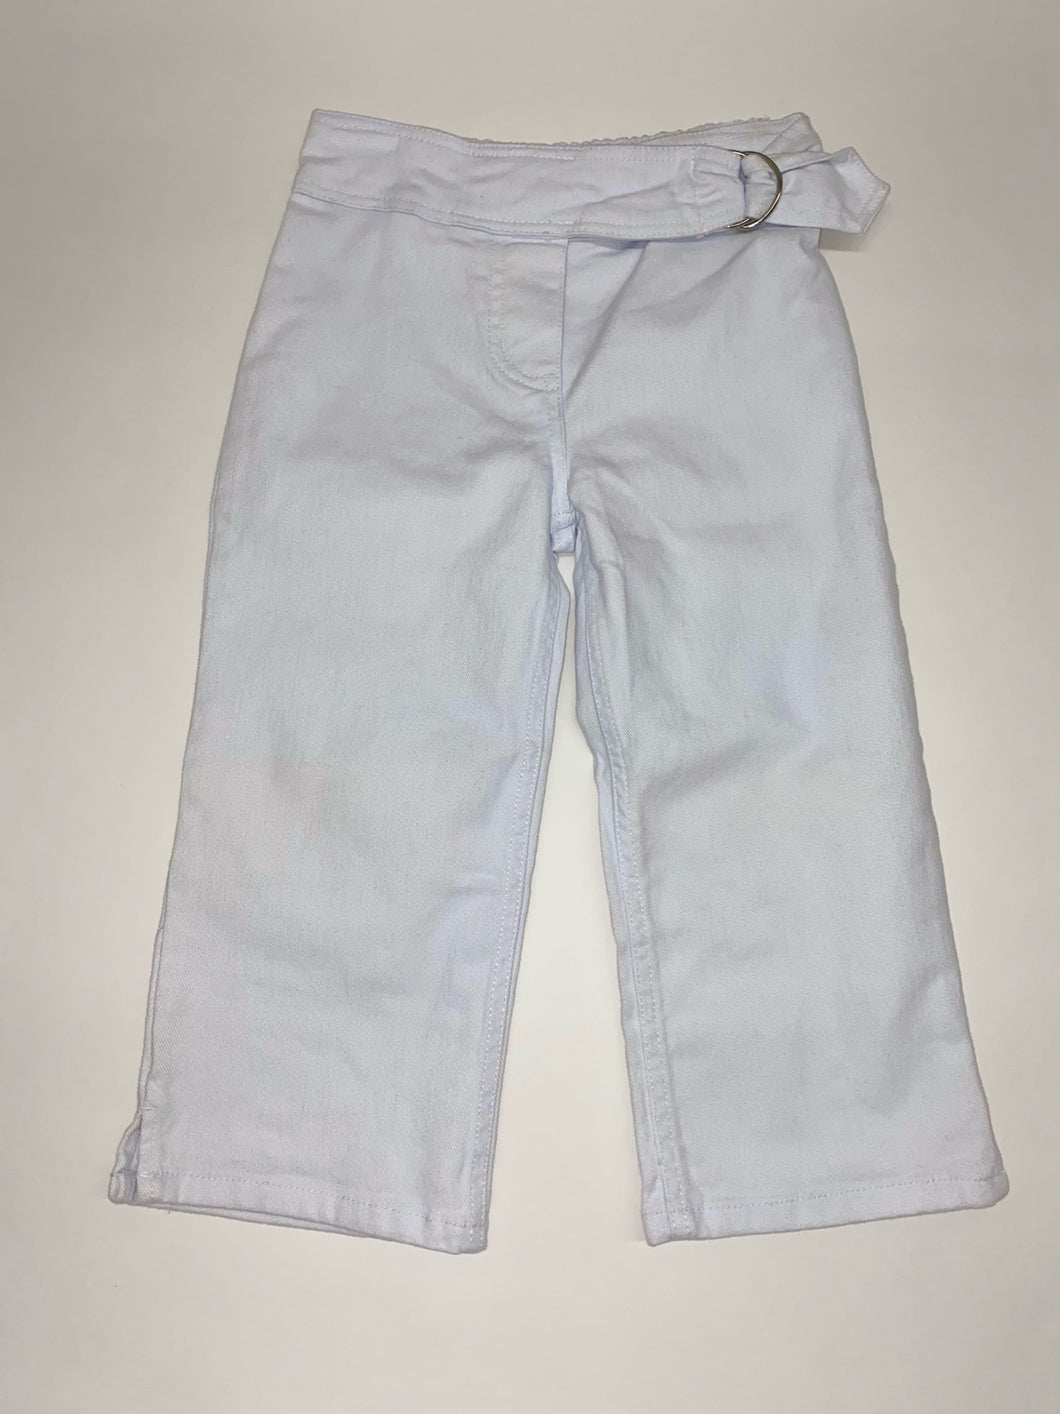 White Children Jeans (12 pack)